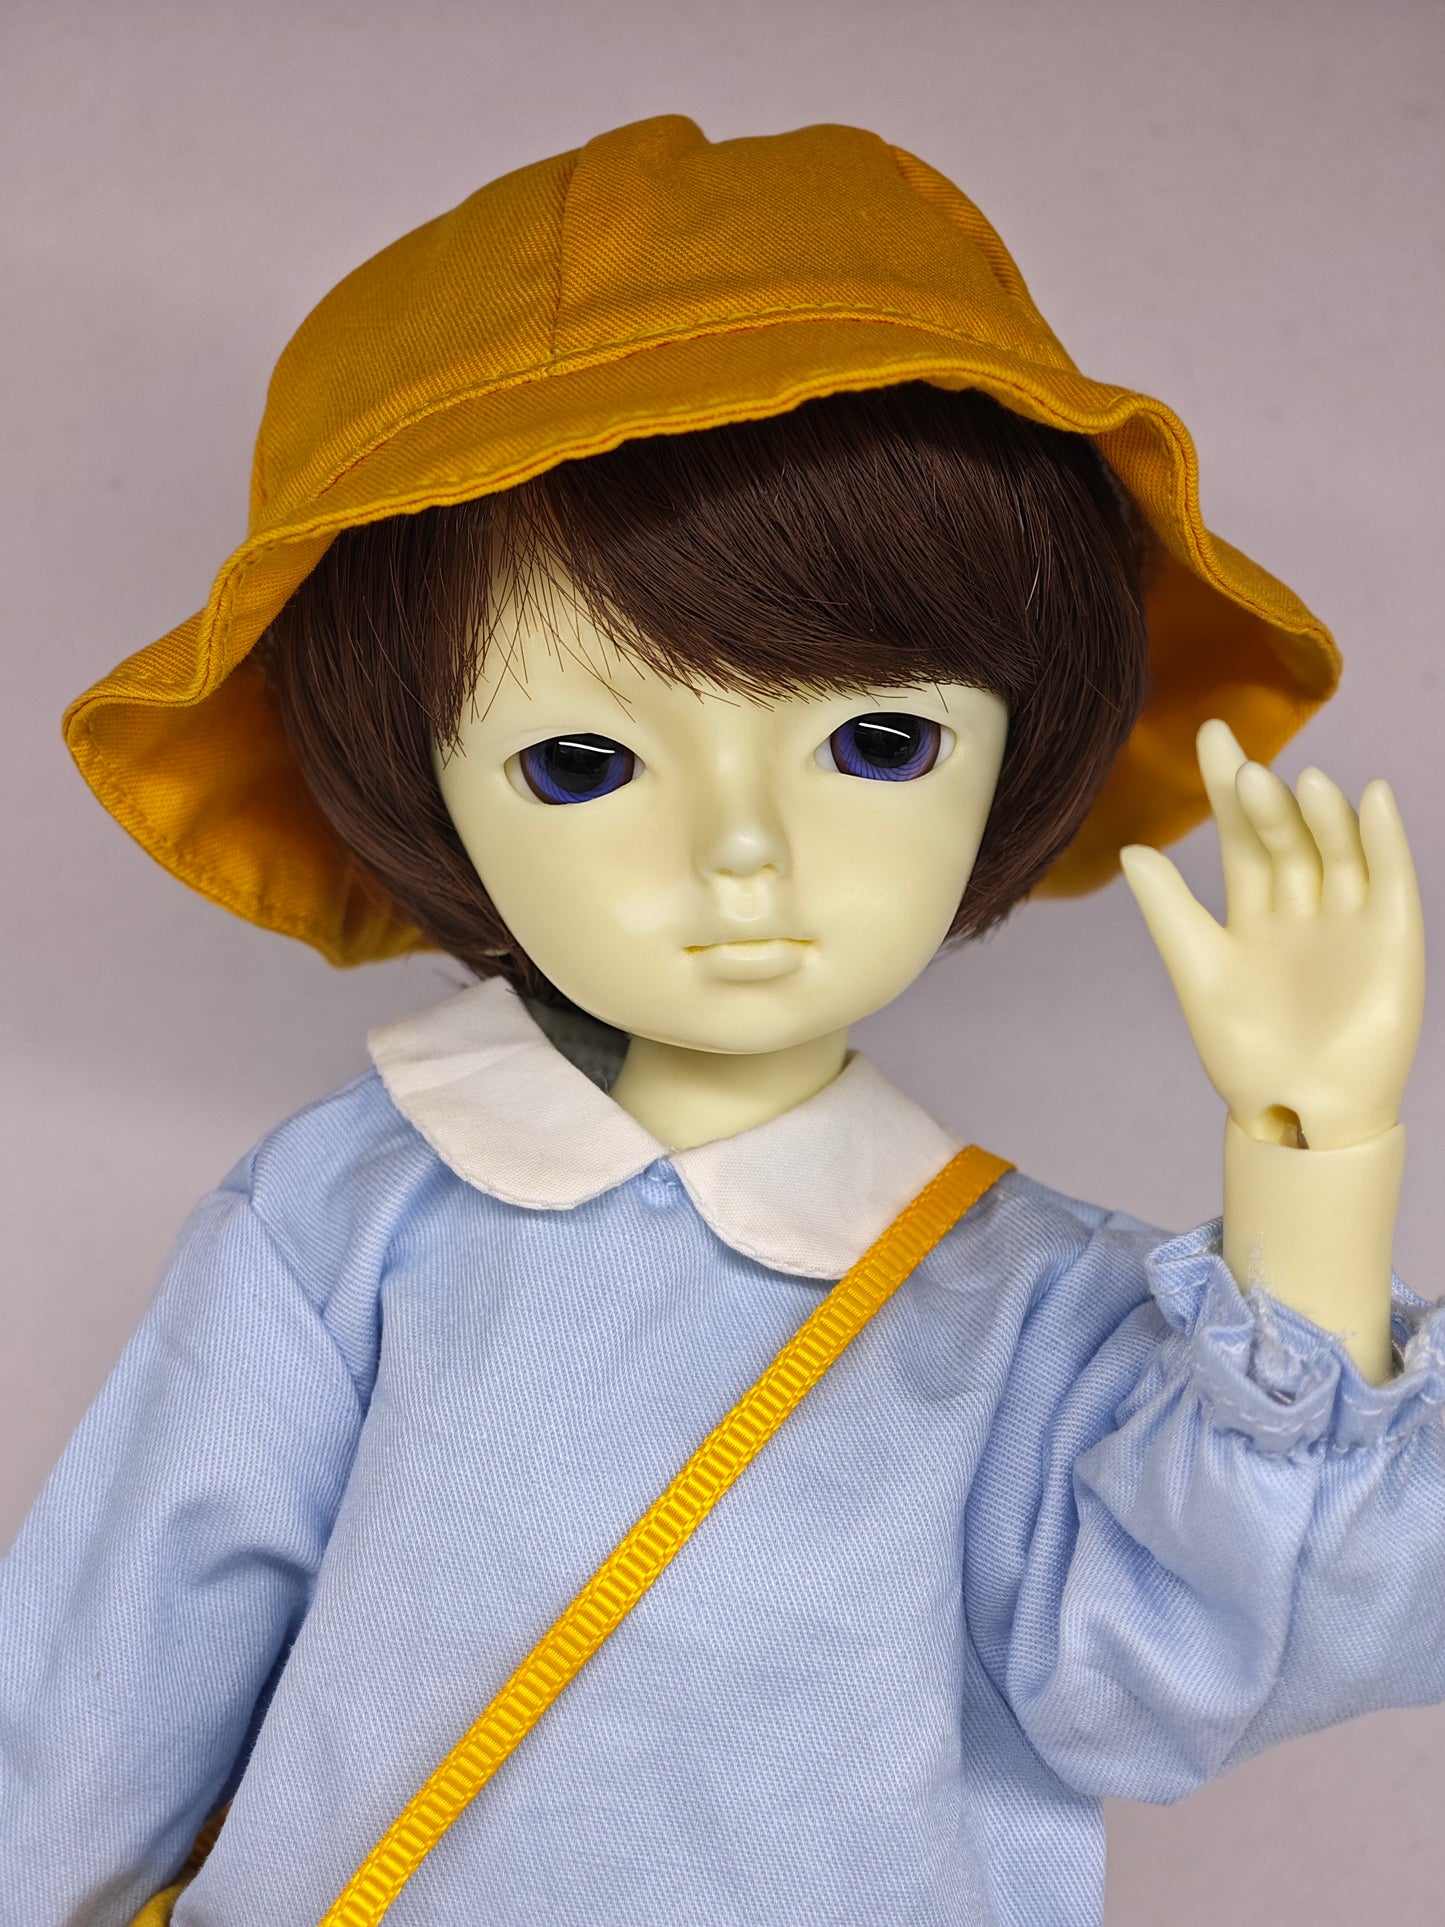 1/6 26cm boy doll in white skin with fullset